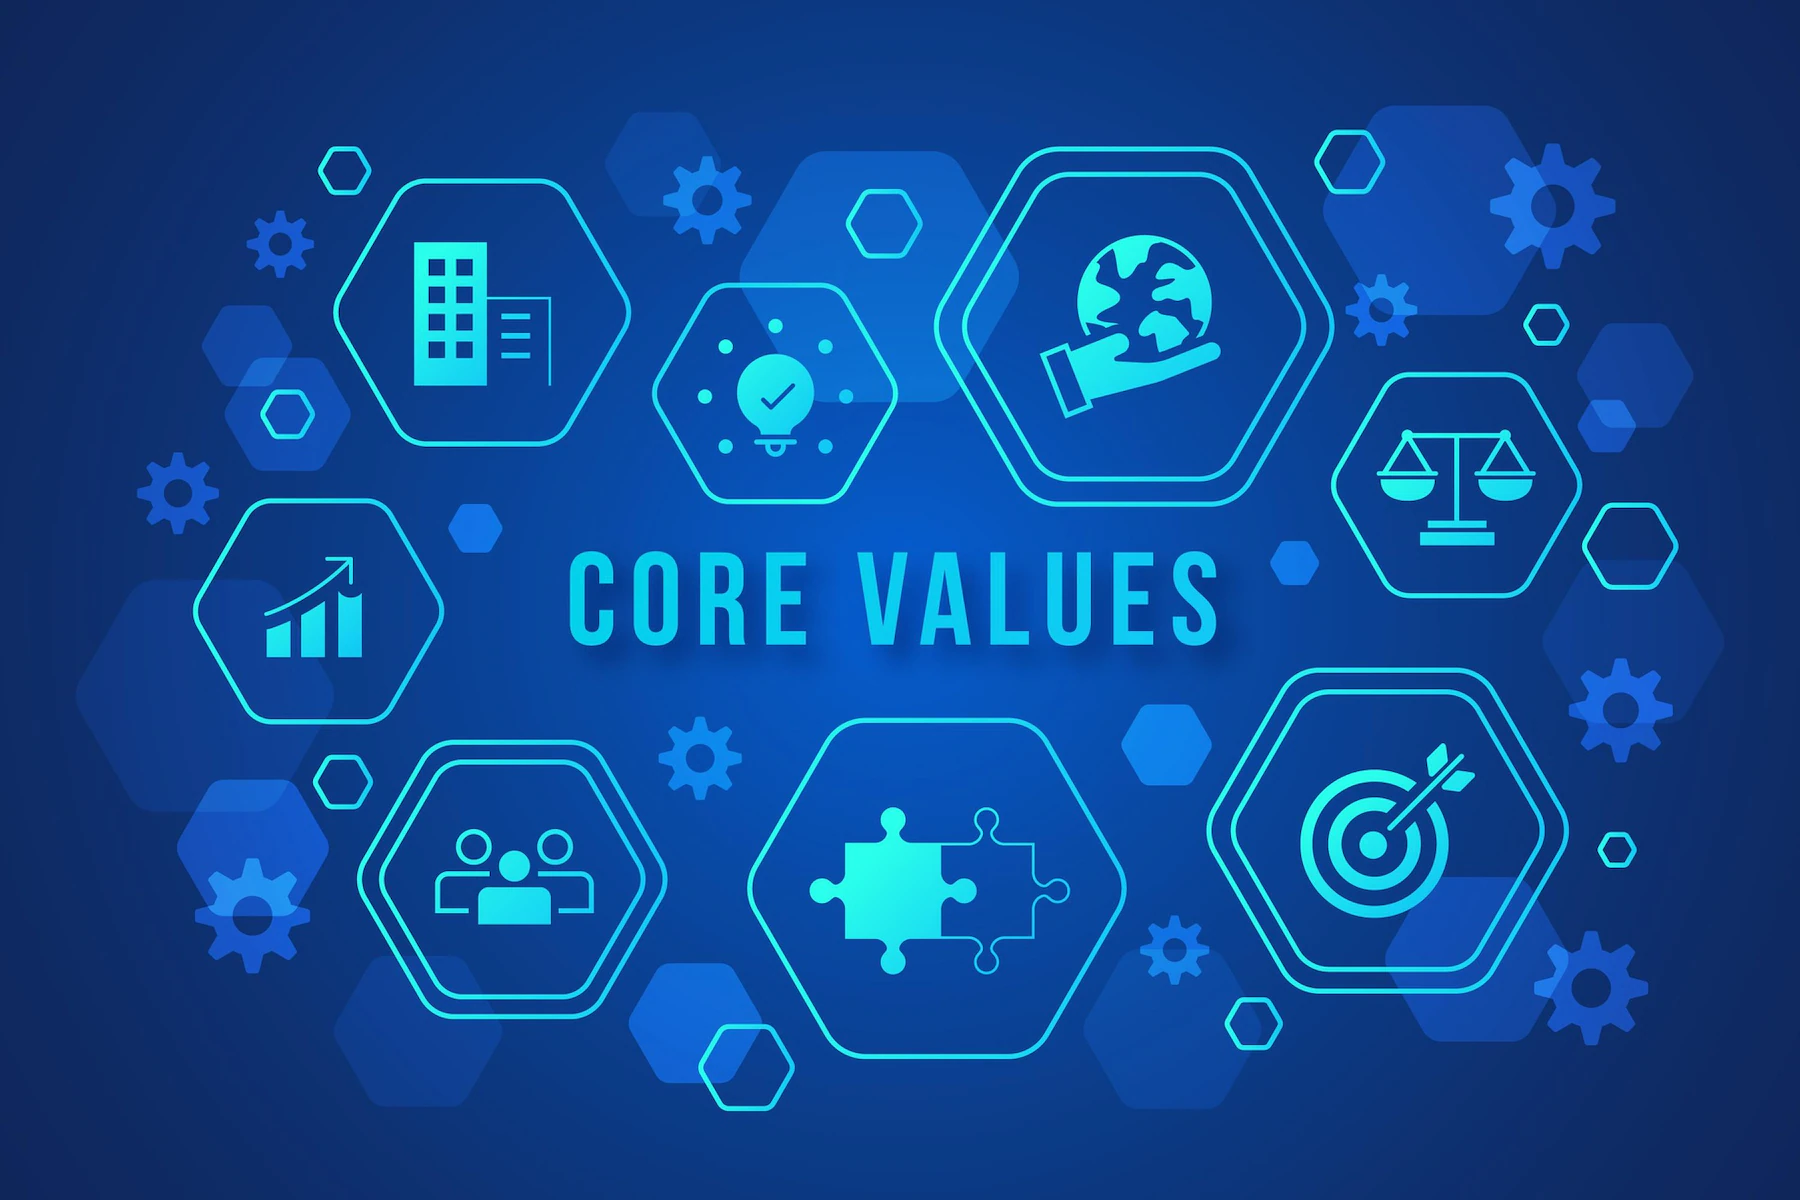 LG IT Asset Management & Disposal Services Core Values